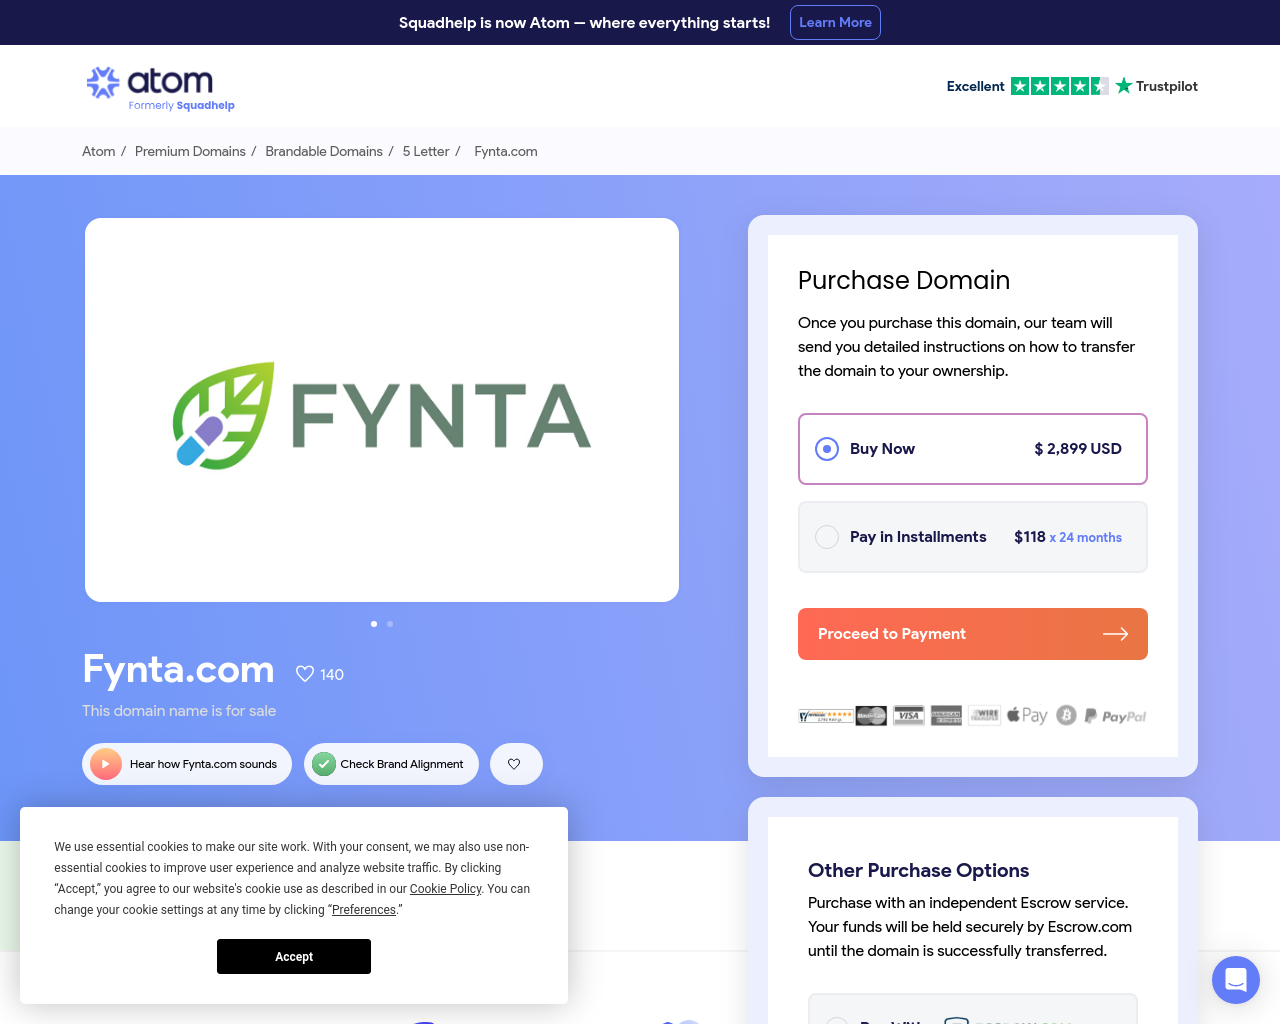 fynta.com